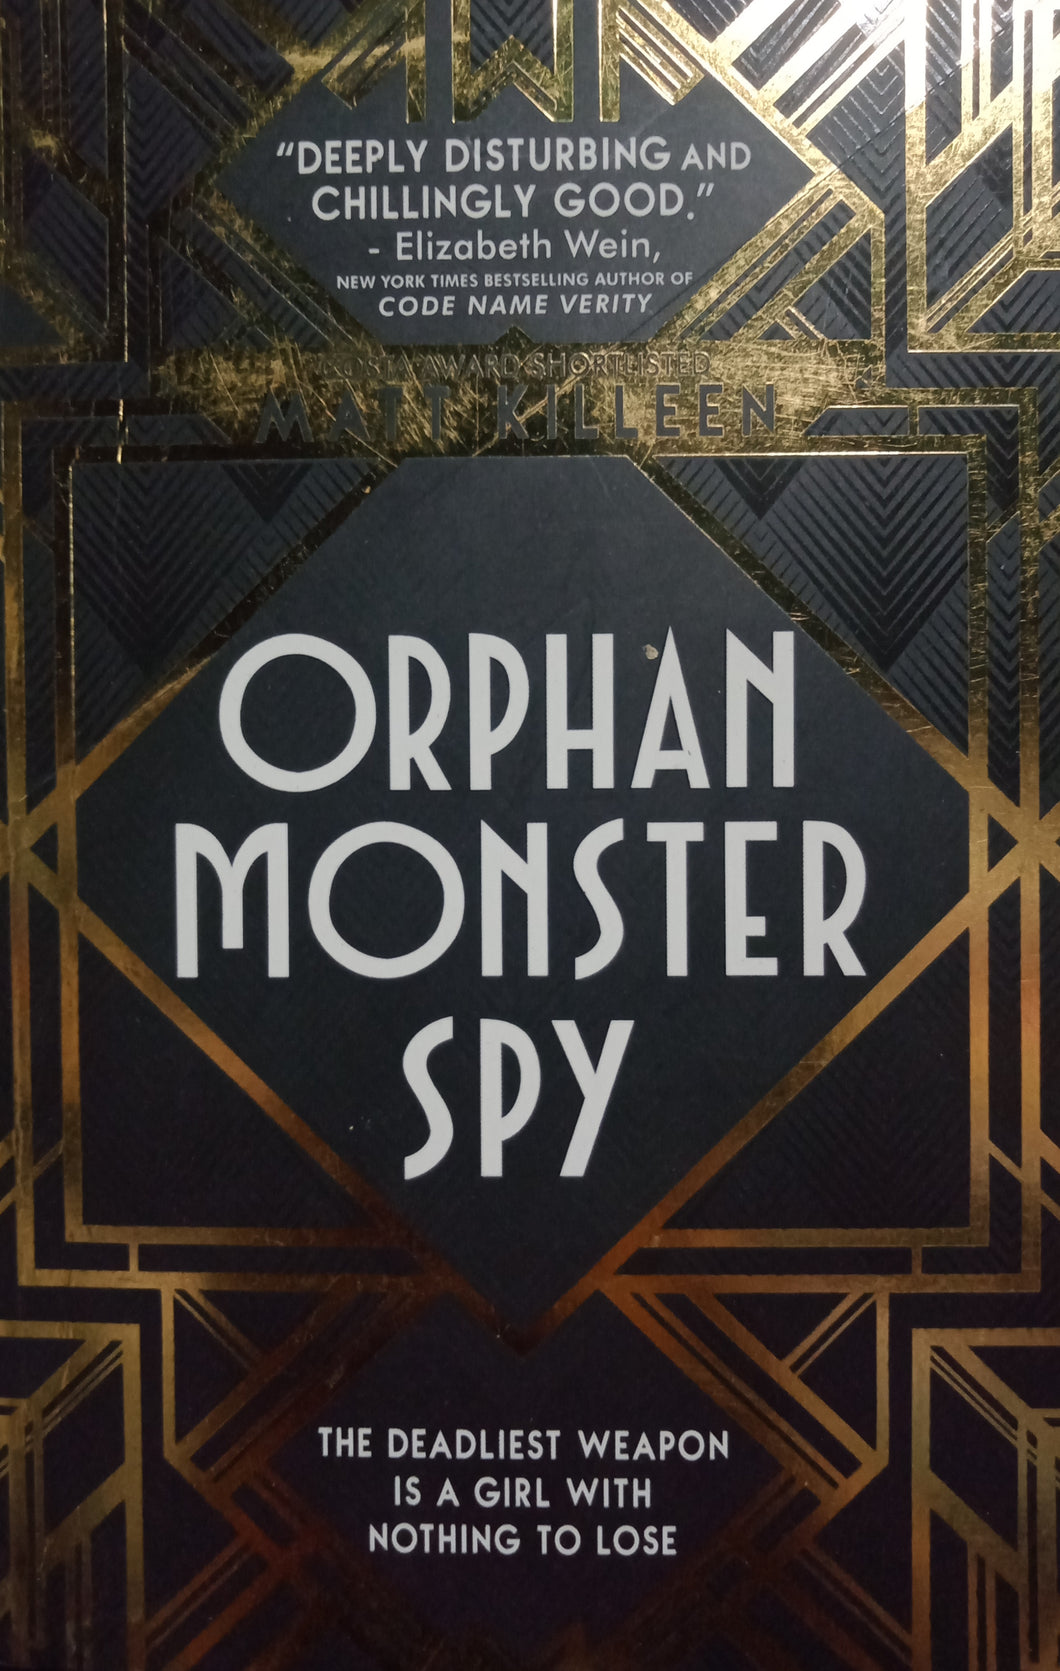 Orphan monster spy By Matt Killeen